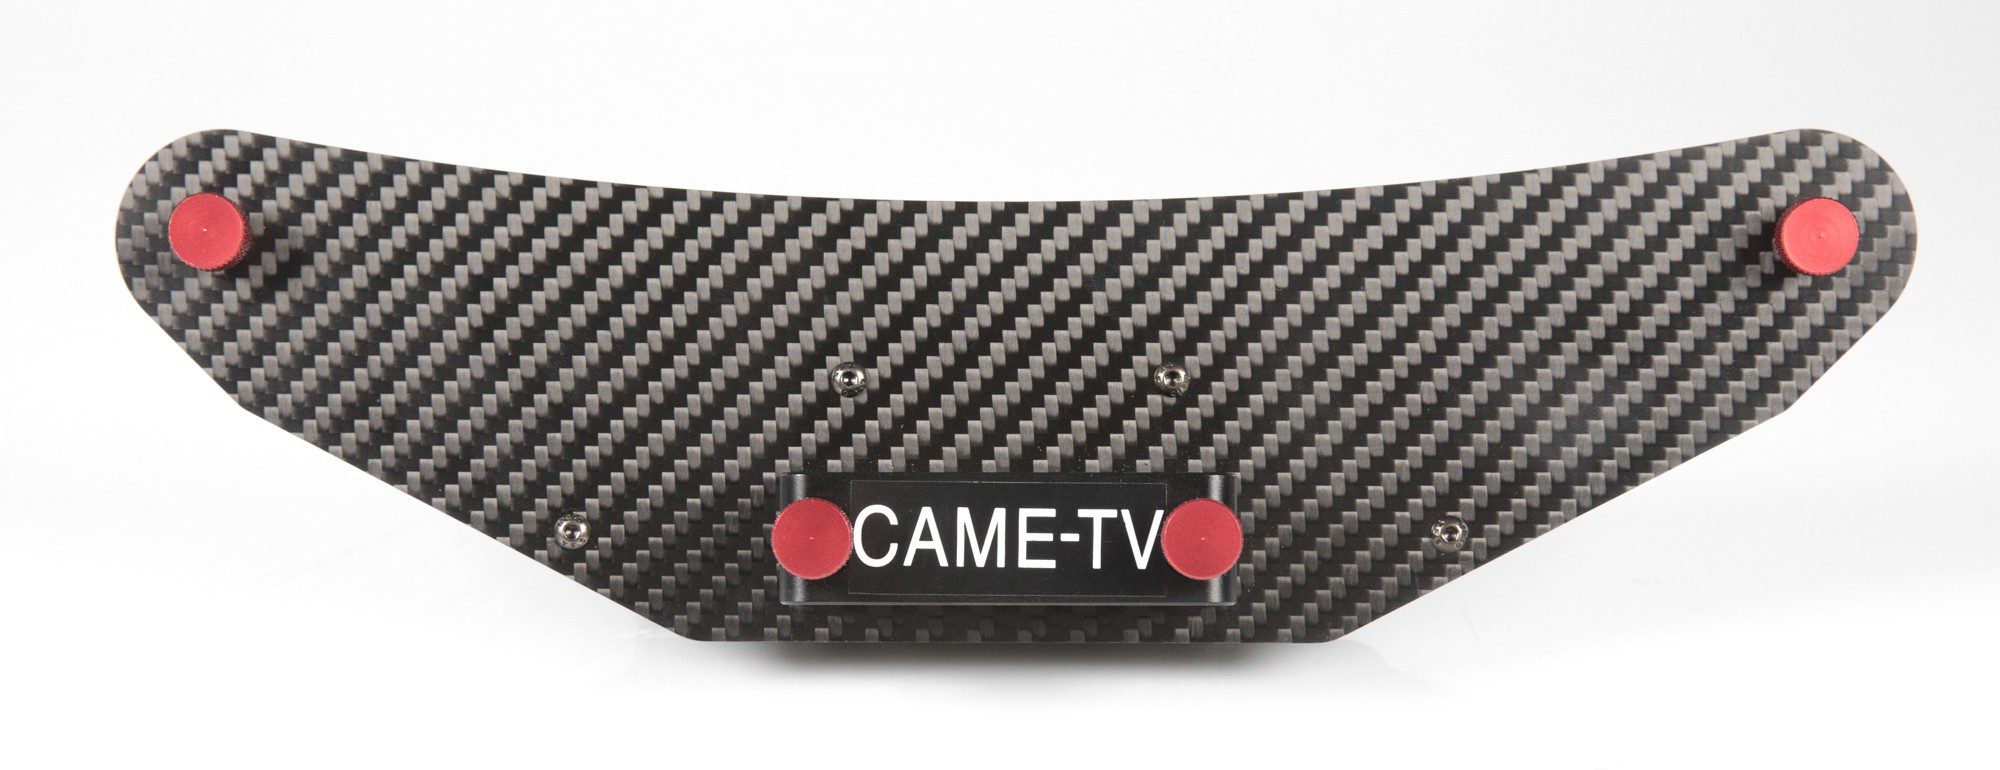 Came-TV Carbon Fiber CableCam